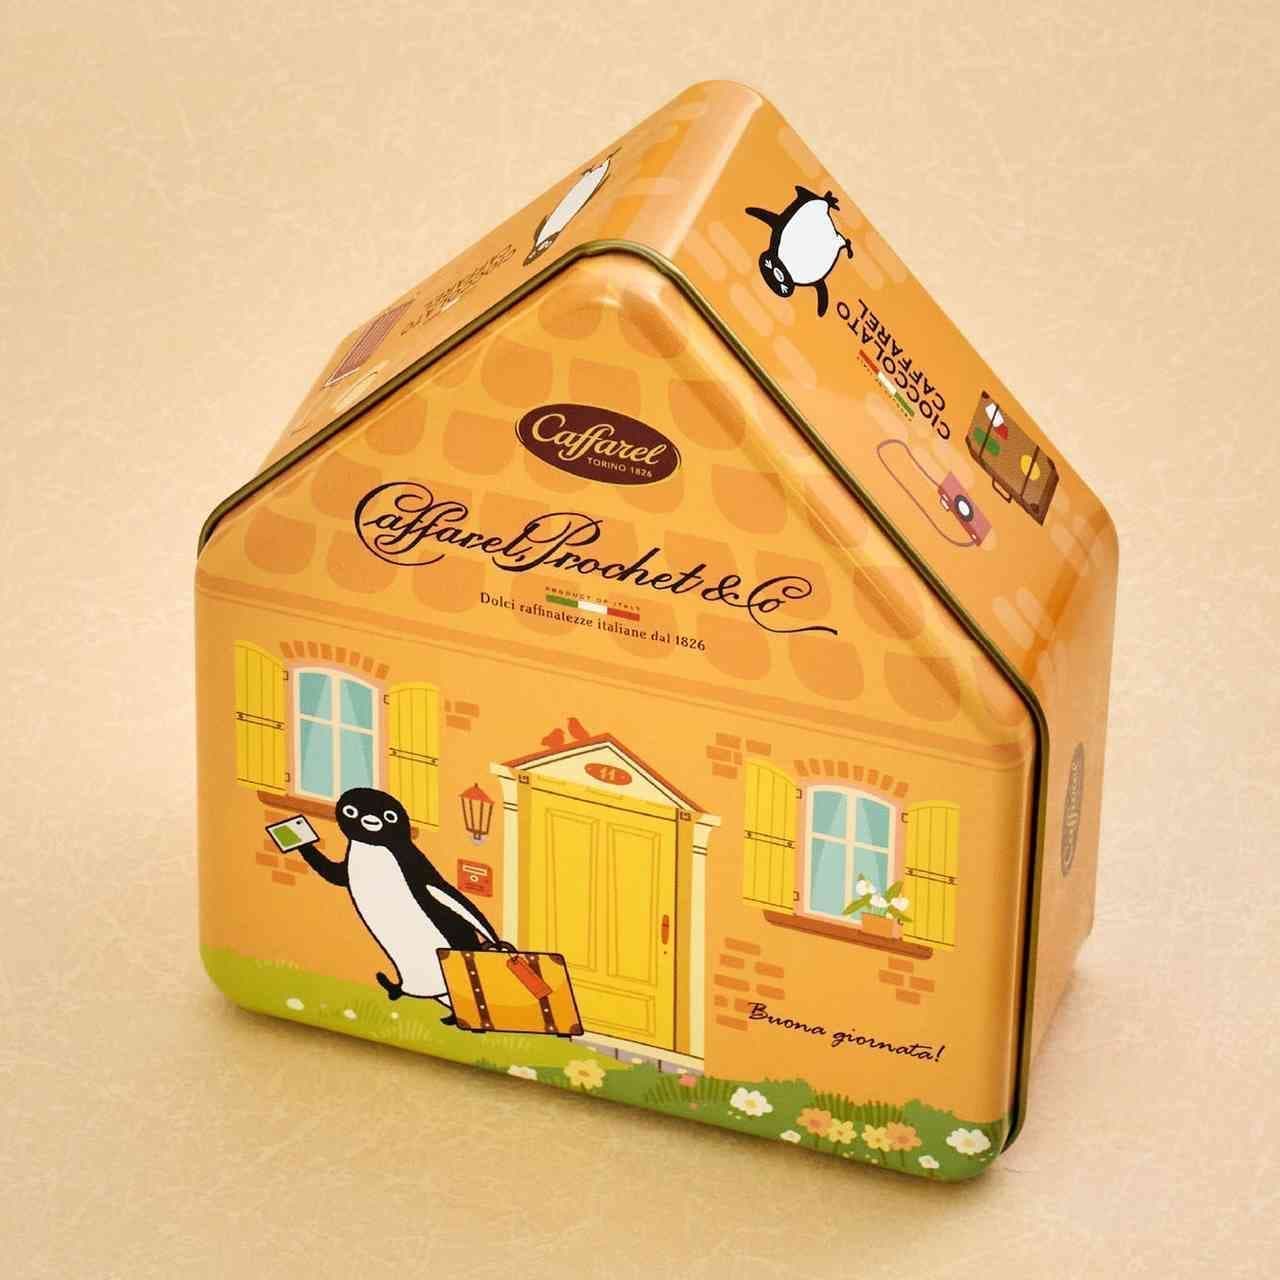 Caffarel "Suica's Penguin House Can